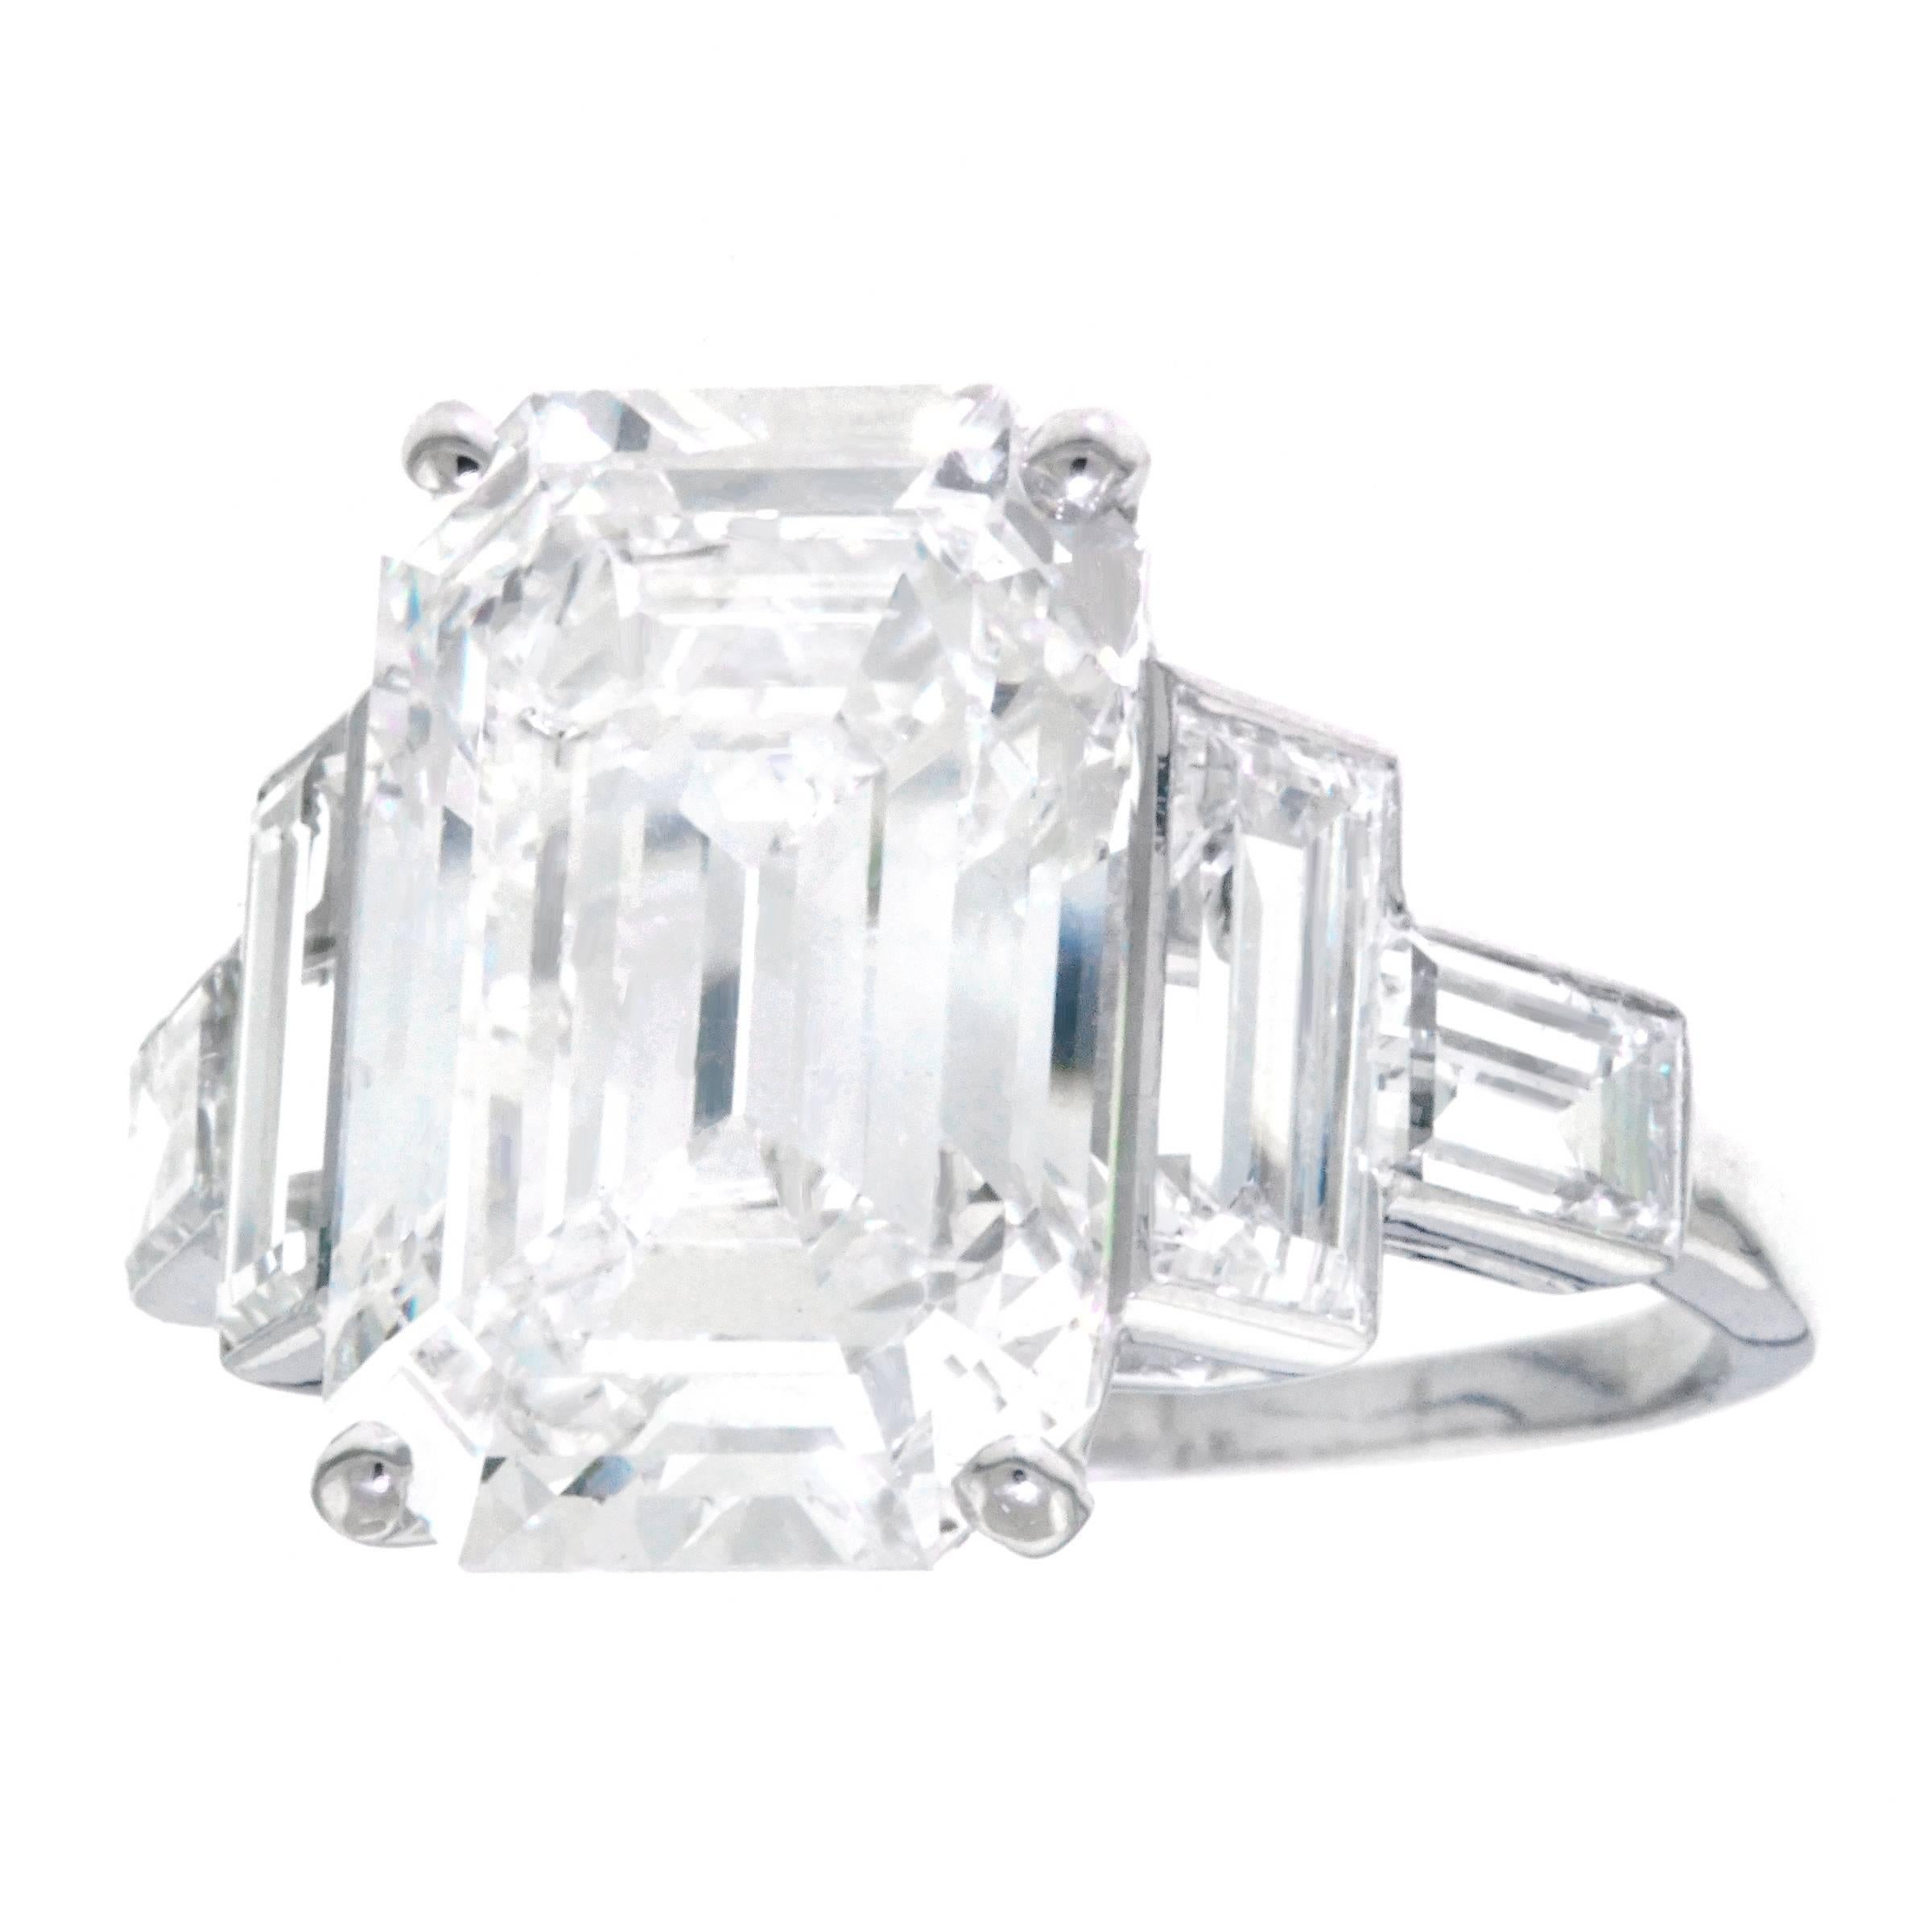 Spectacular 6.64 Carat Art Deco Diamond Ring in Platinum GIA 5